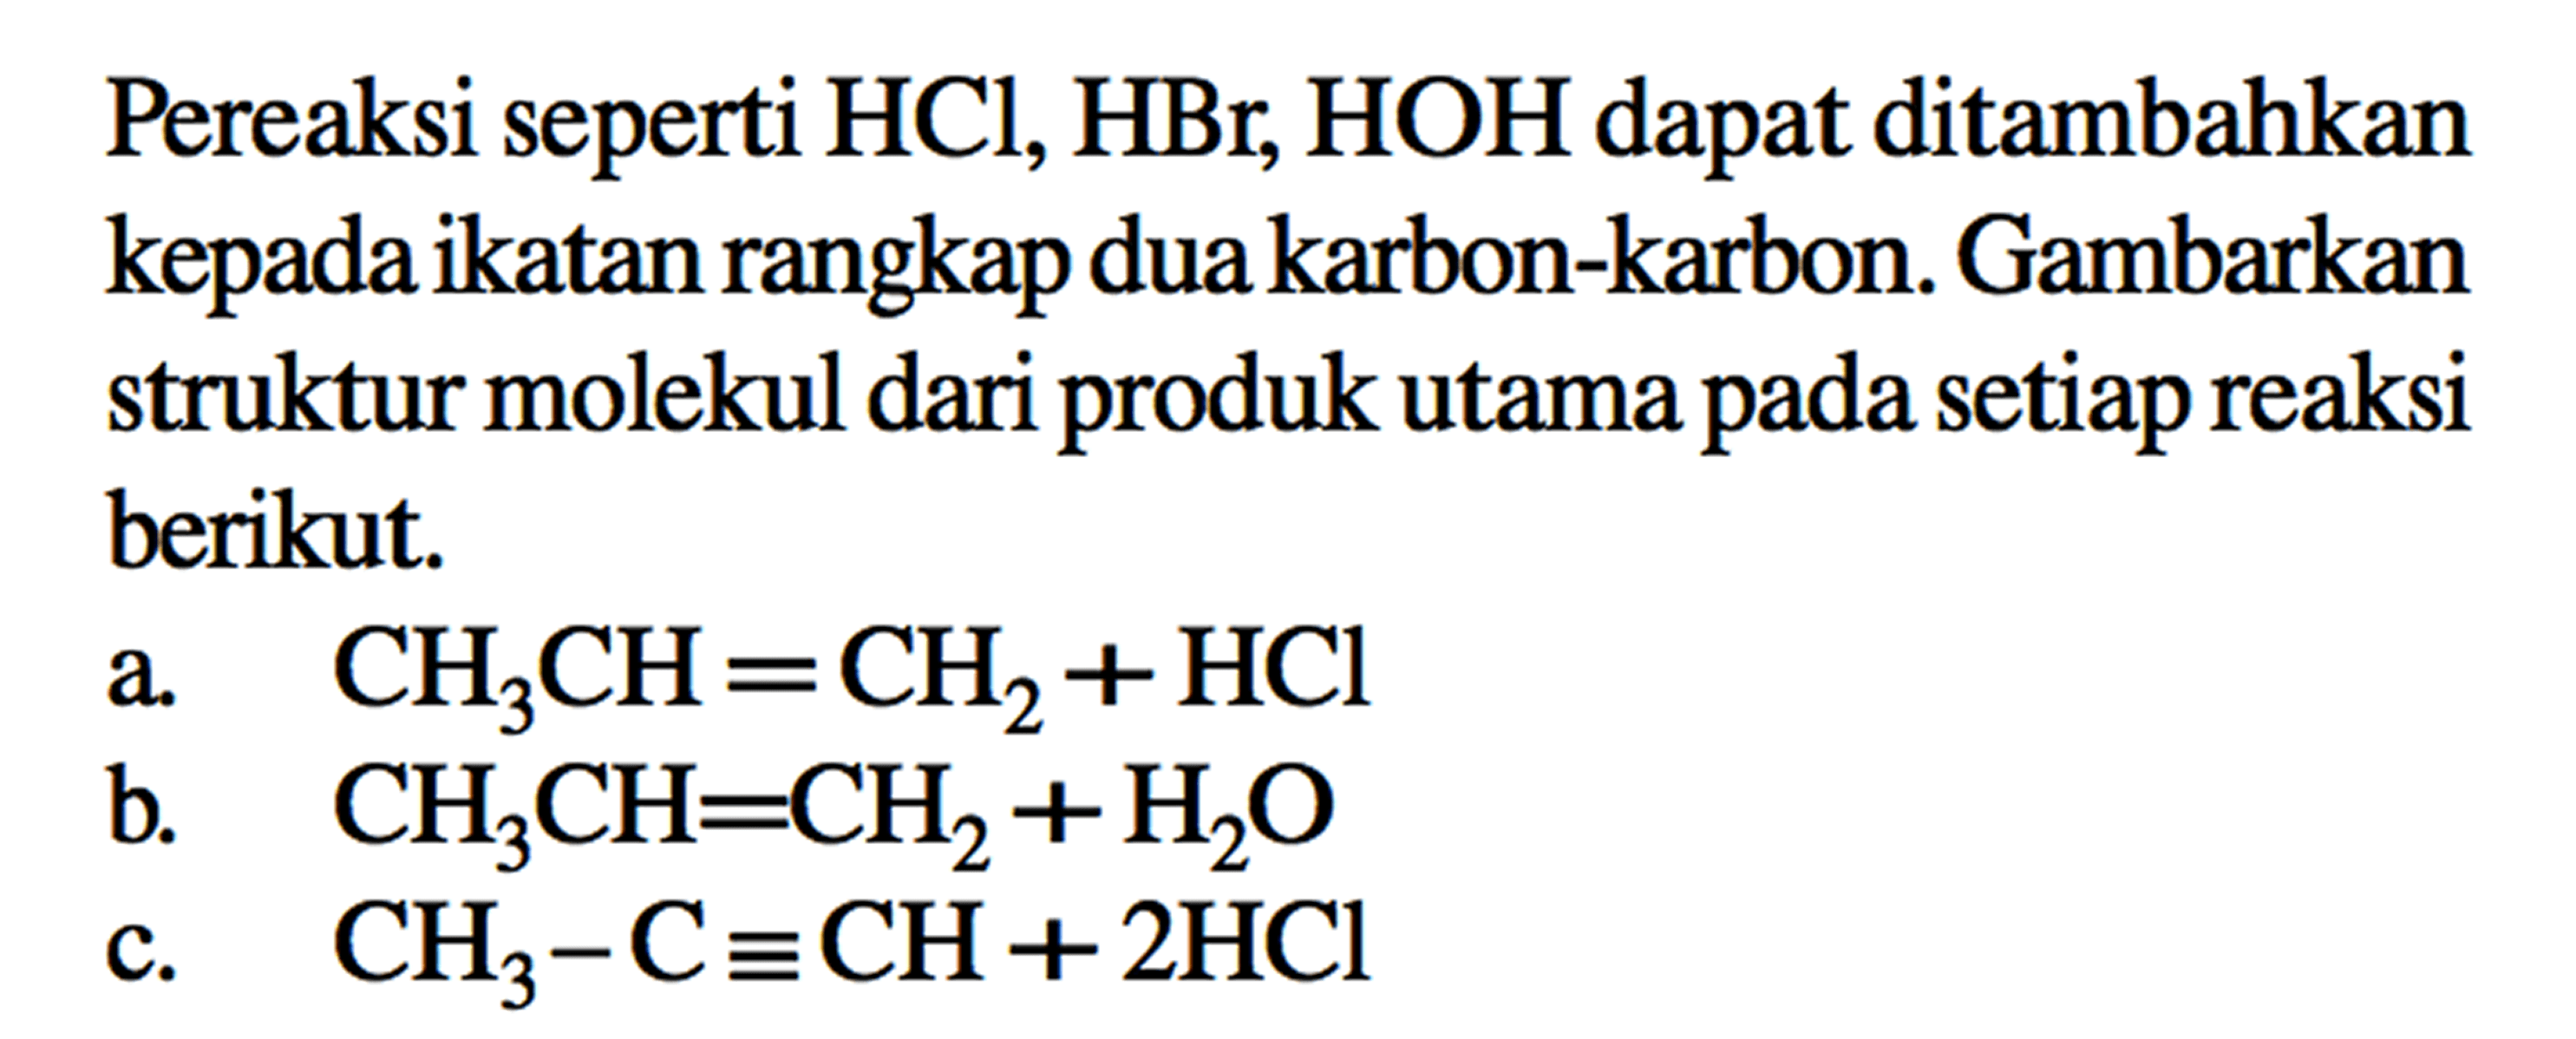 Pereaksi seperti HCl, HBr, HOH dapat ditambahkan kepada ikatan rangkap duakarbon-karbon. Gambarkan struktur molekul dari produk utama pada setiap reaksi berikut. a CH3CH = CH2 + HCl b. CH3CH = CH2 + H2O c. CH3 - C = CH + 2HCl